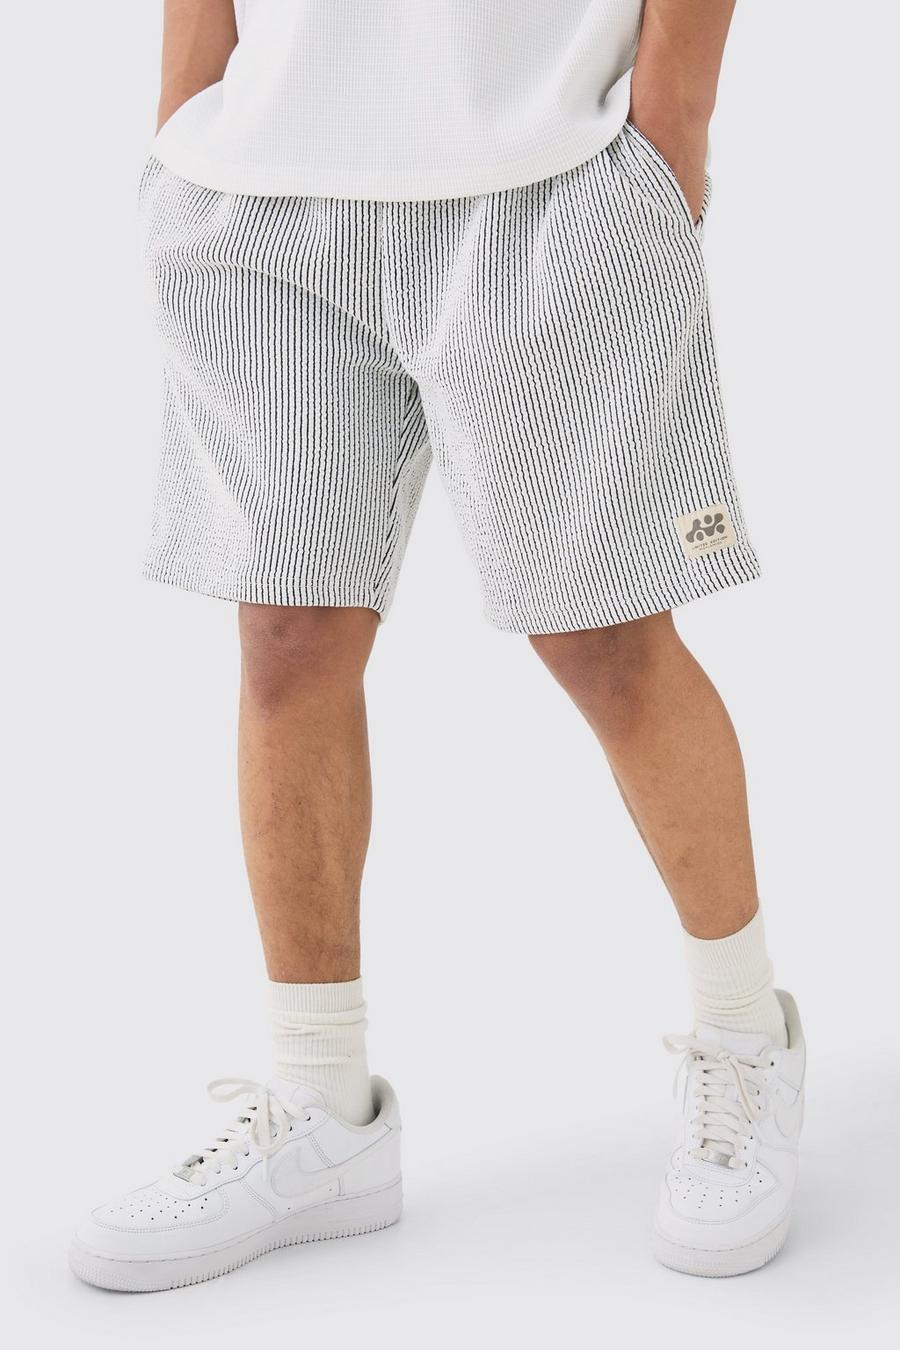 Lockere mittellange strukturierte Shorts, White